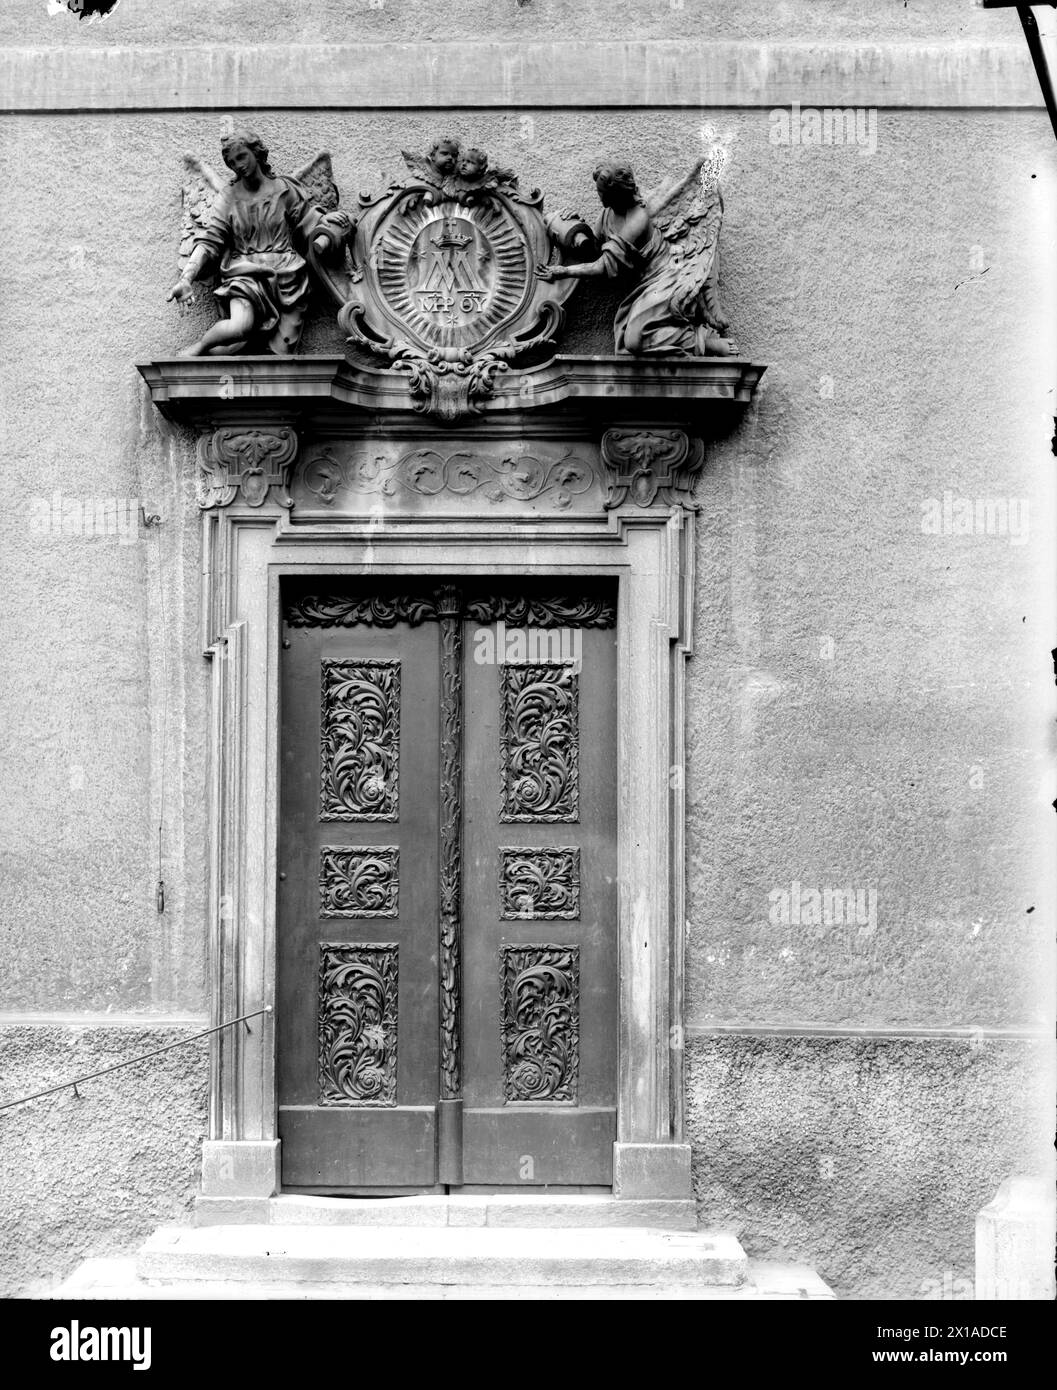 Wien 8, Piaristenkloster, Portal mit geschnitzten Türen und reichen Supraporten (Marienmonogramm), 1899 - 18990101 PD0520 - Rechteinfo: Rights Managed (RM) Stockfoto